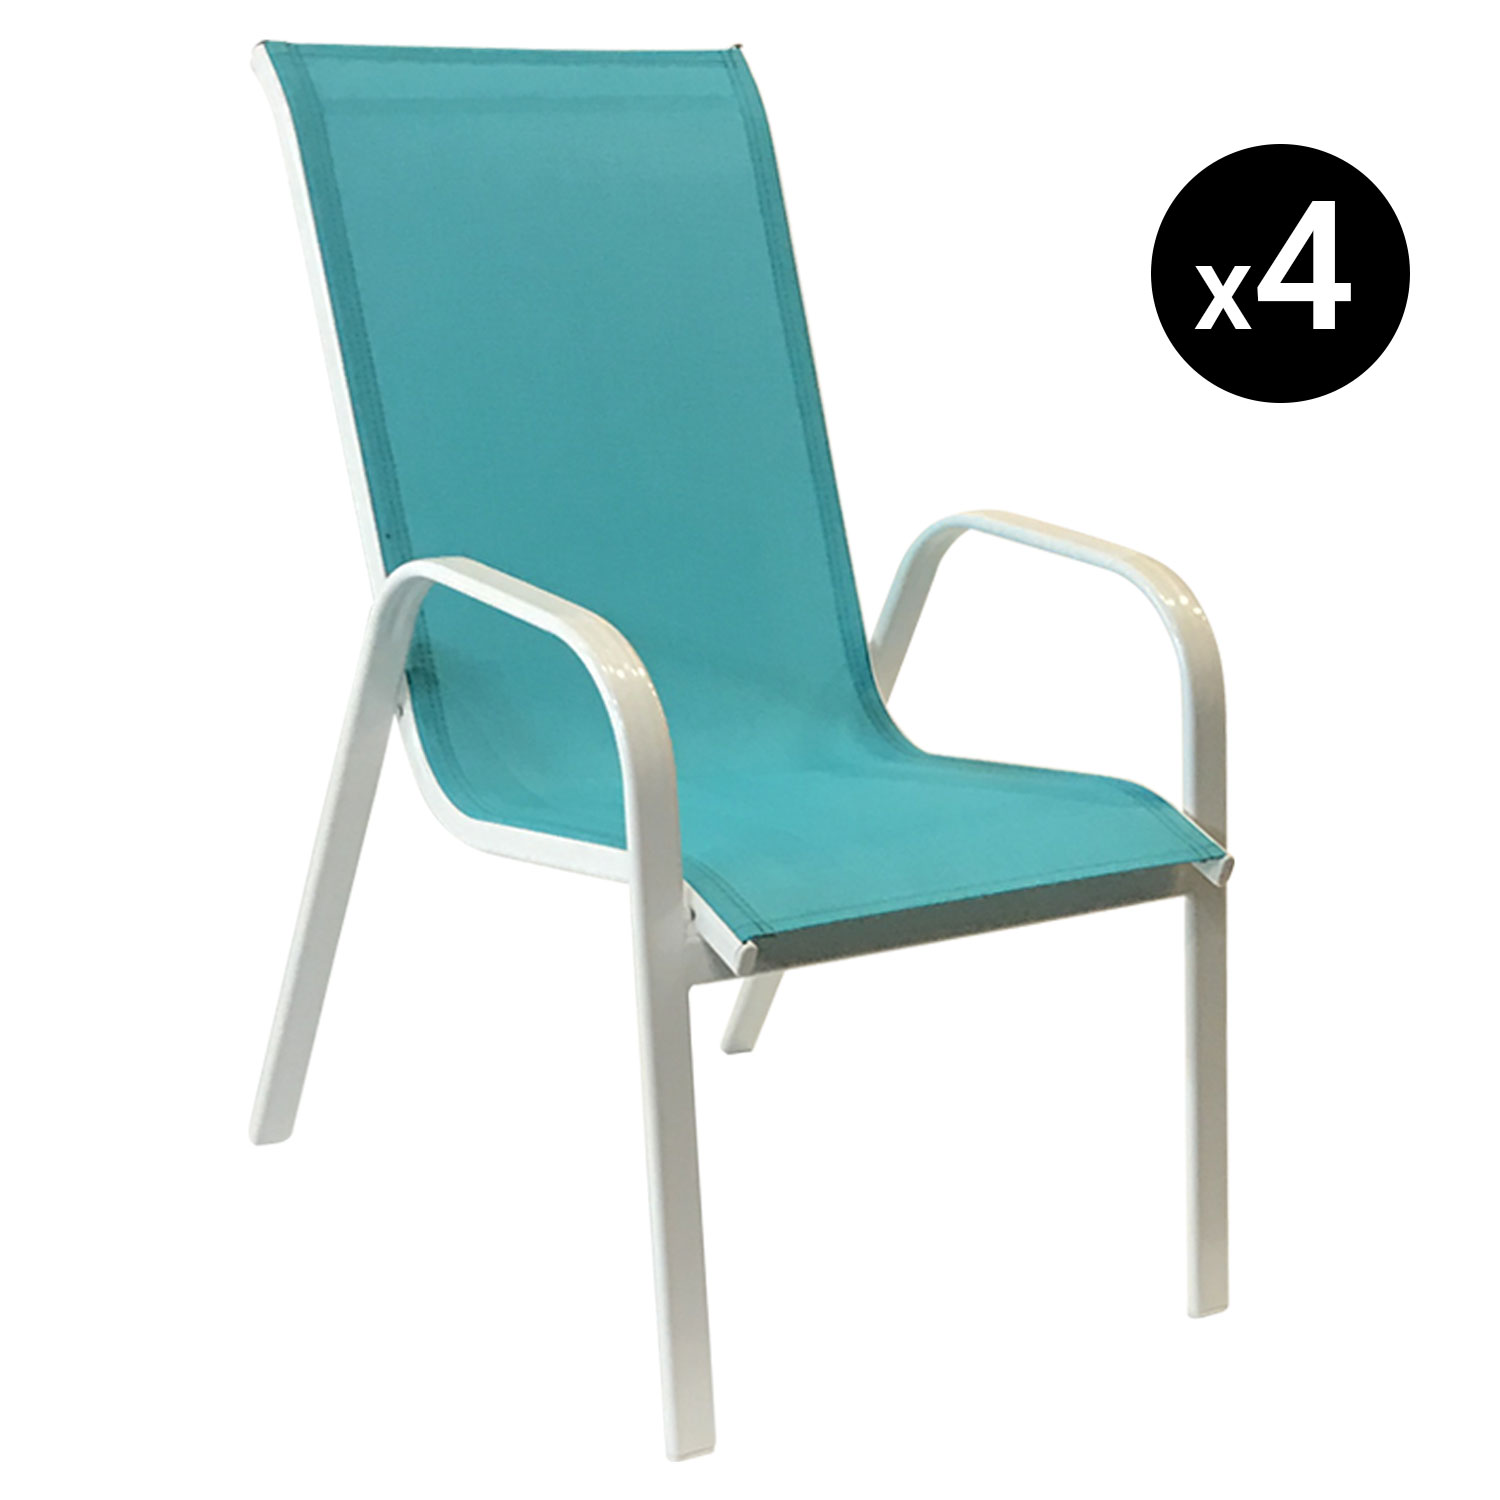 Satz von 4 Stühlen MARBELLA aus blauem Textilene - weißem Aluminium